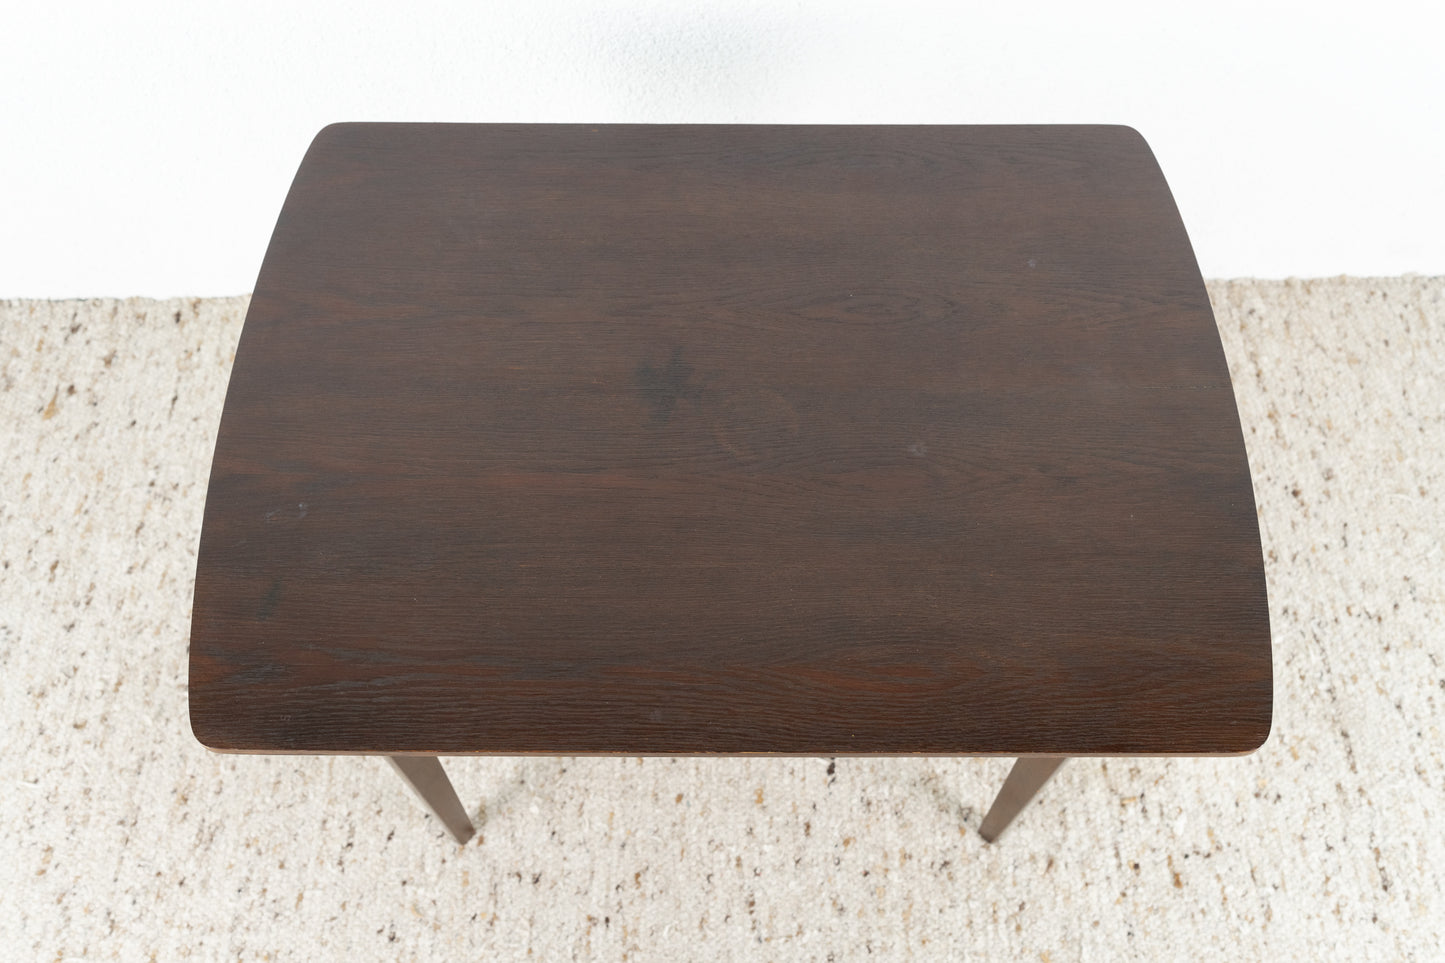 Vintage Esstisch Tisch ausziehbar Holz Odenwald Tische ausziehbar Küche